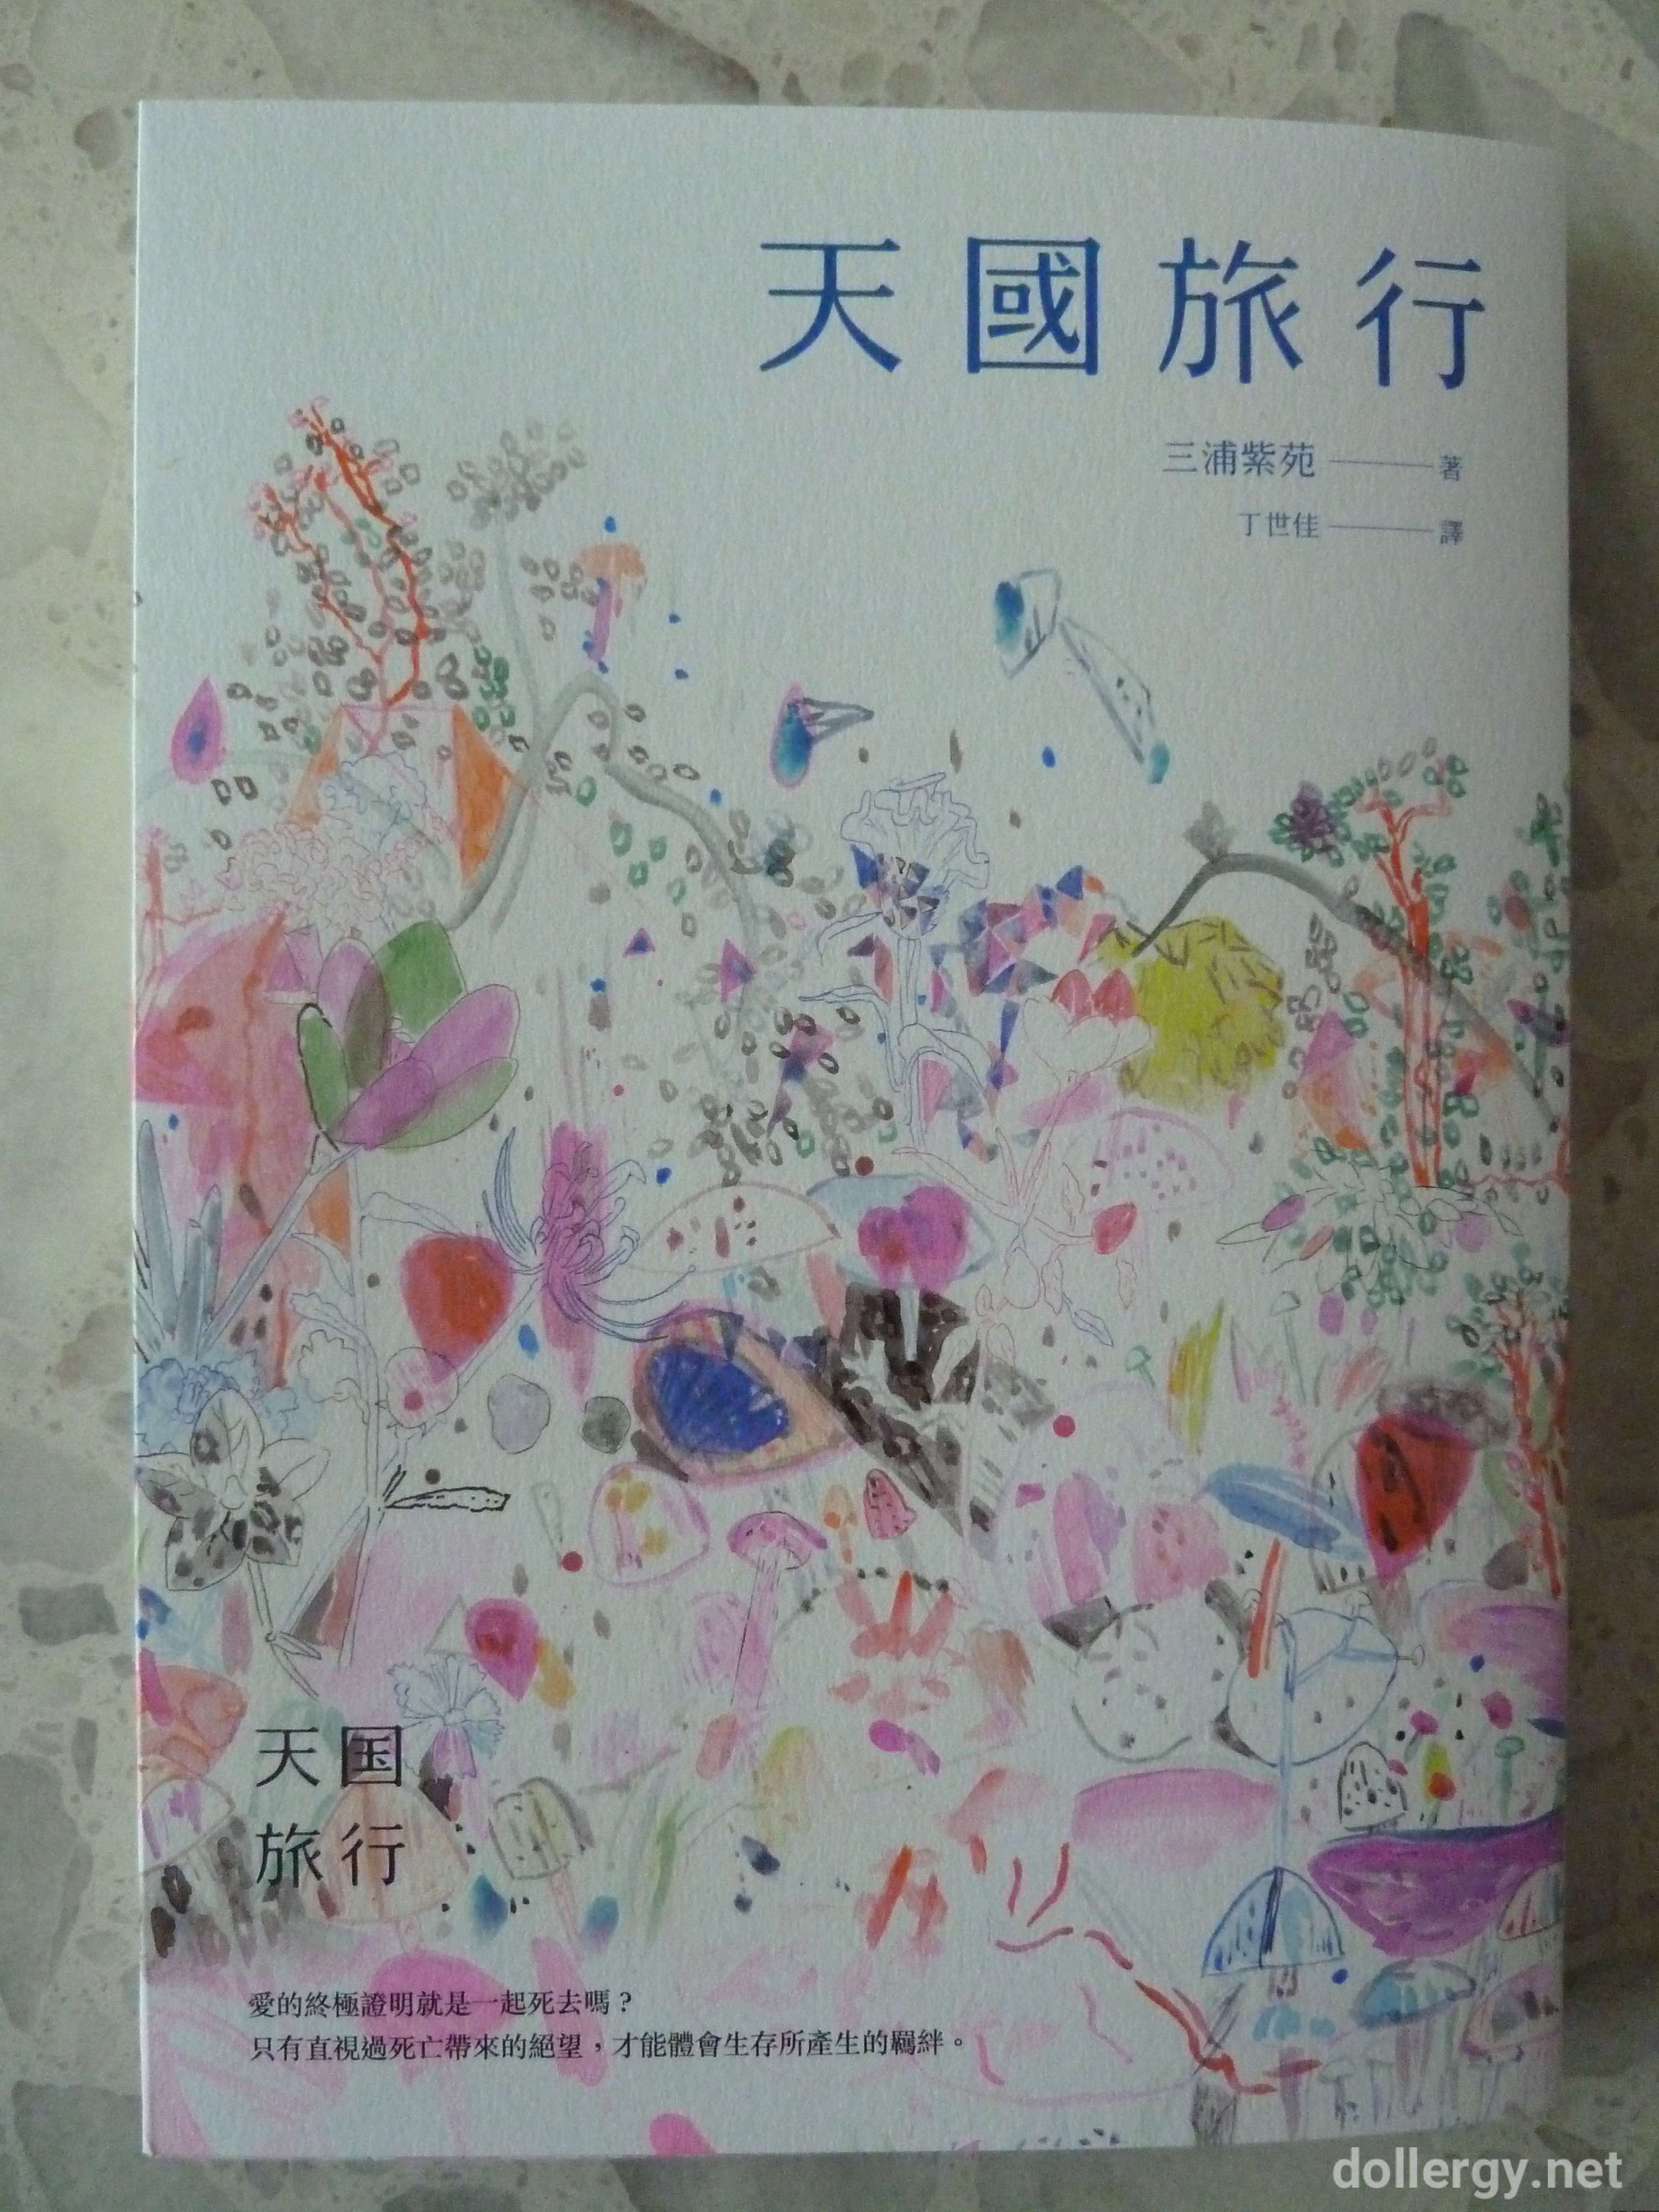 天國旅行 Book Cover